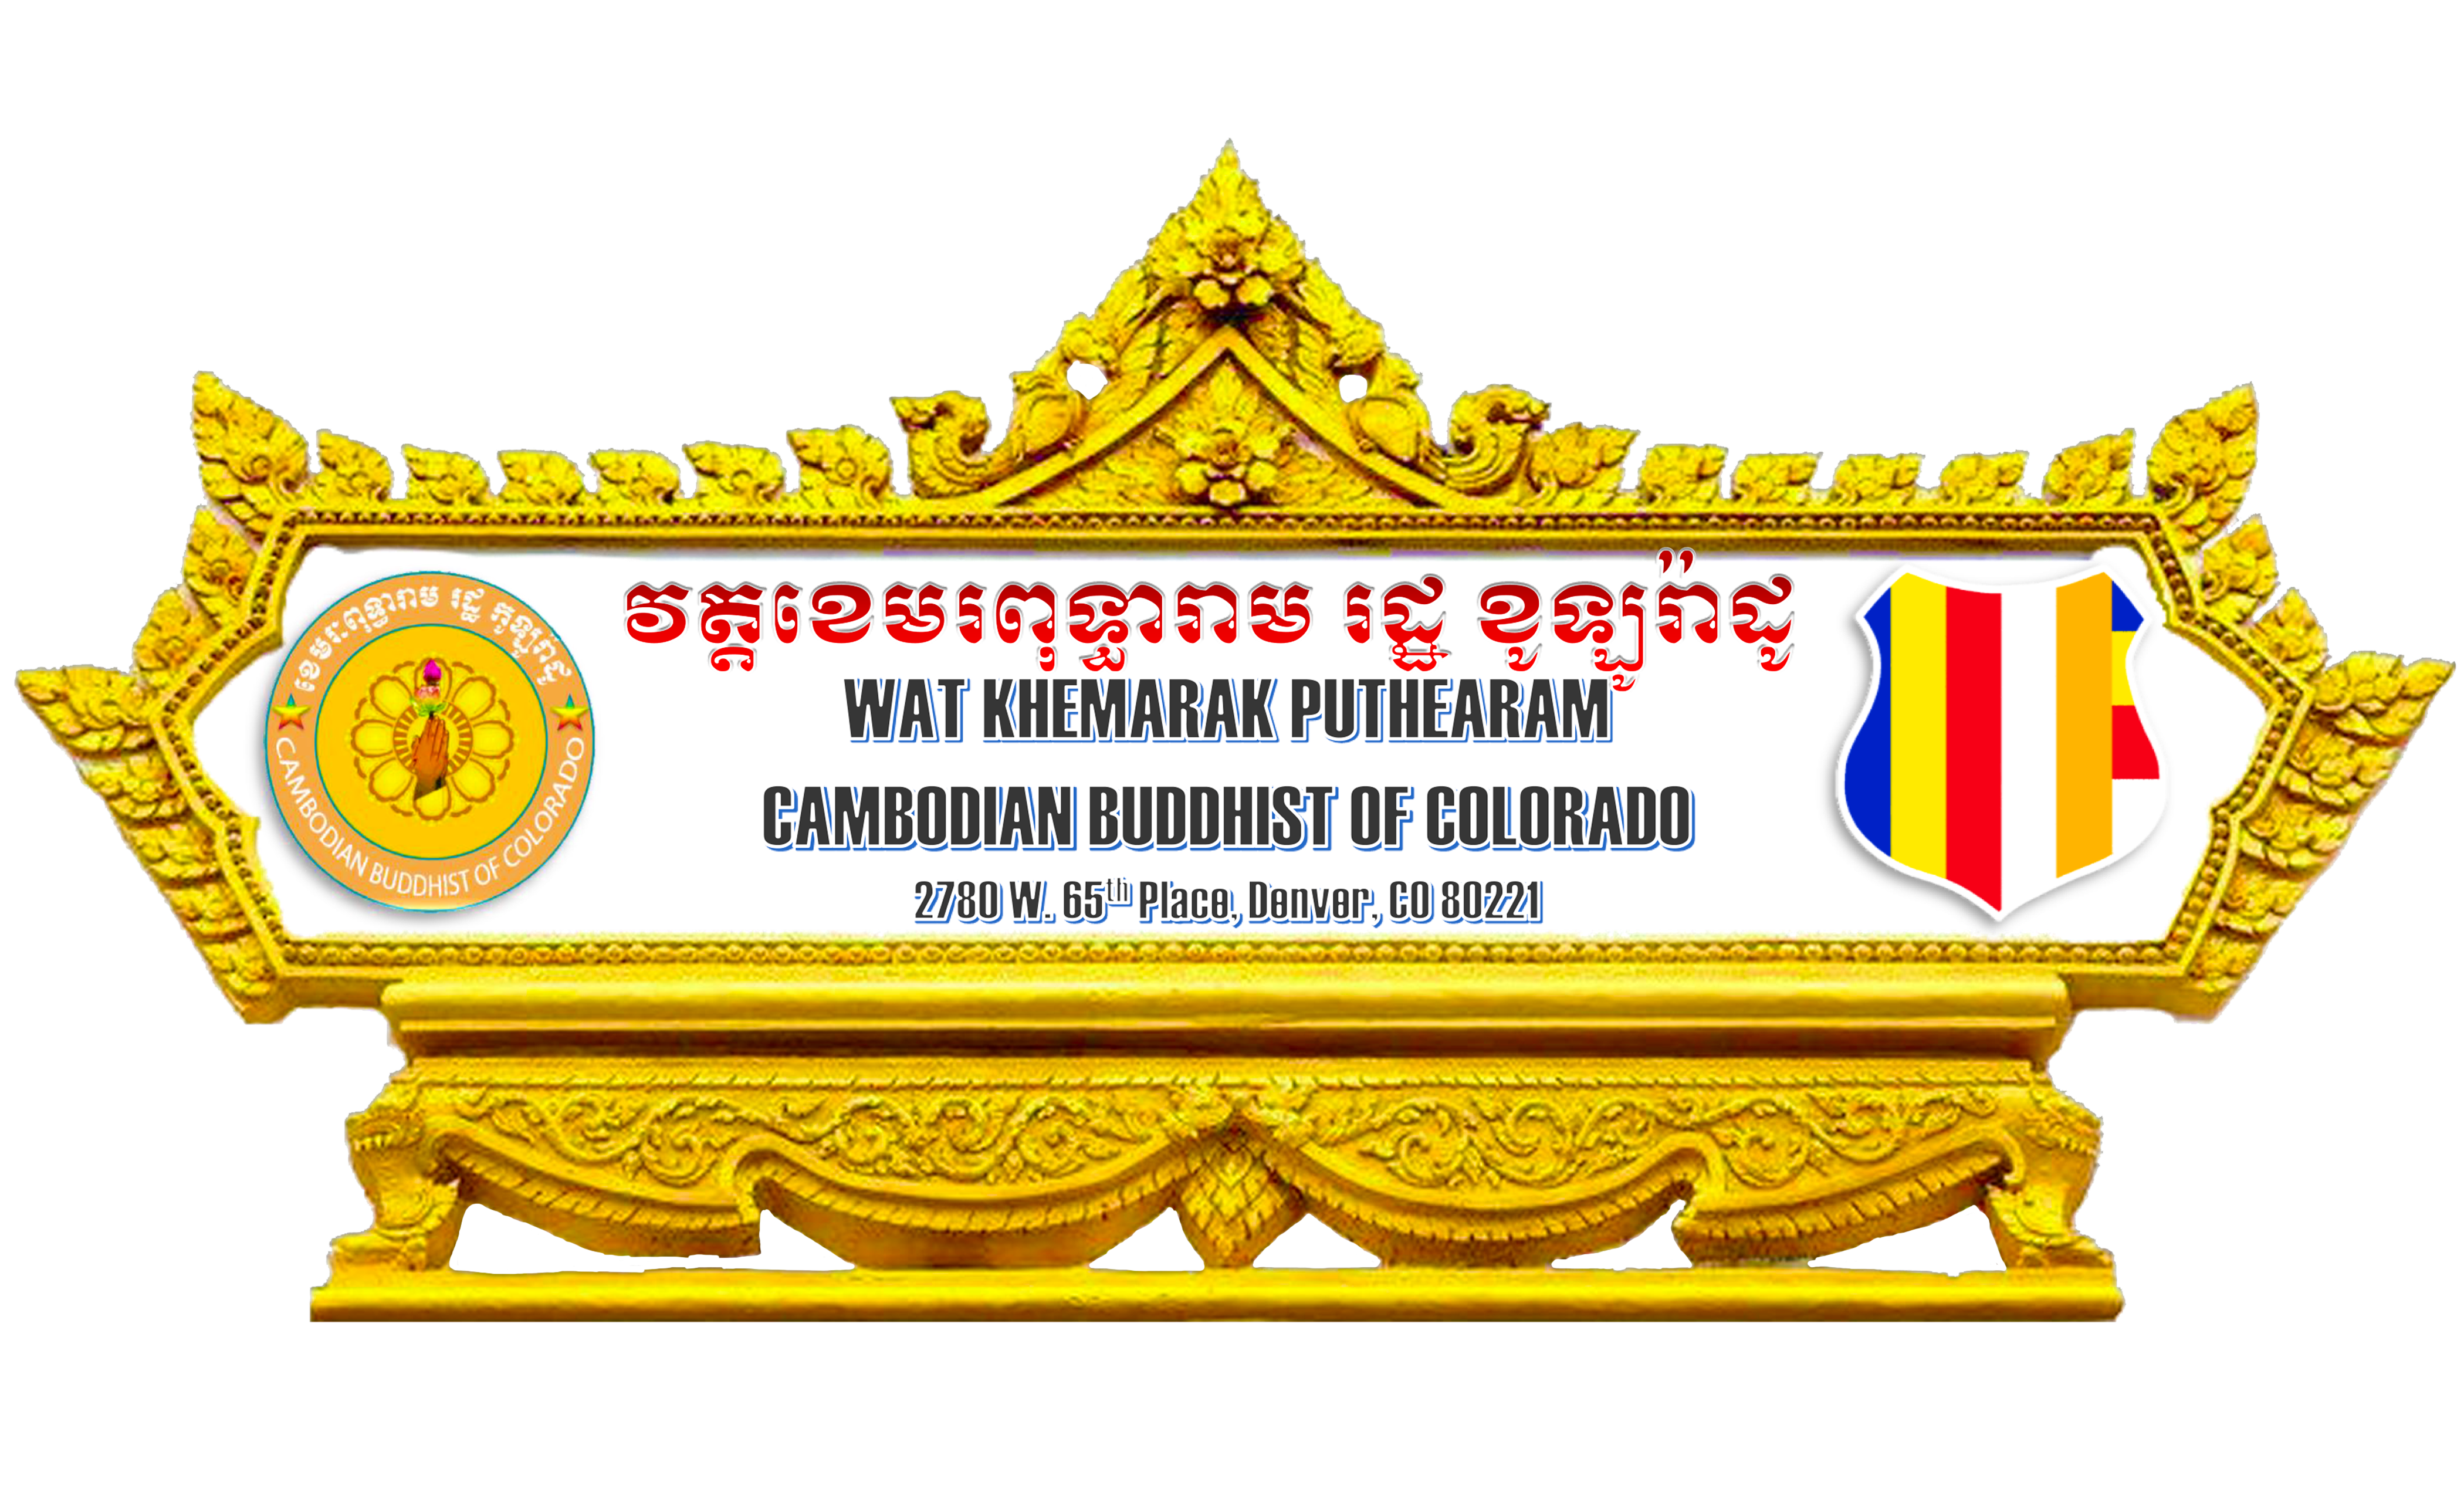 Cambodian Buddhist of Colorado